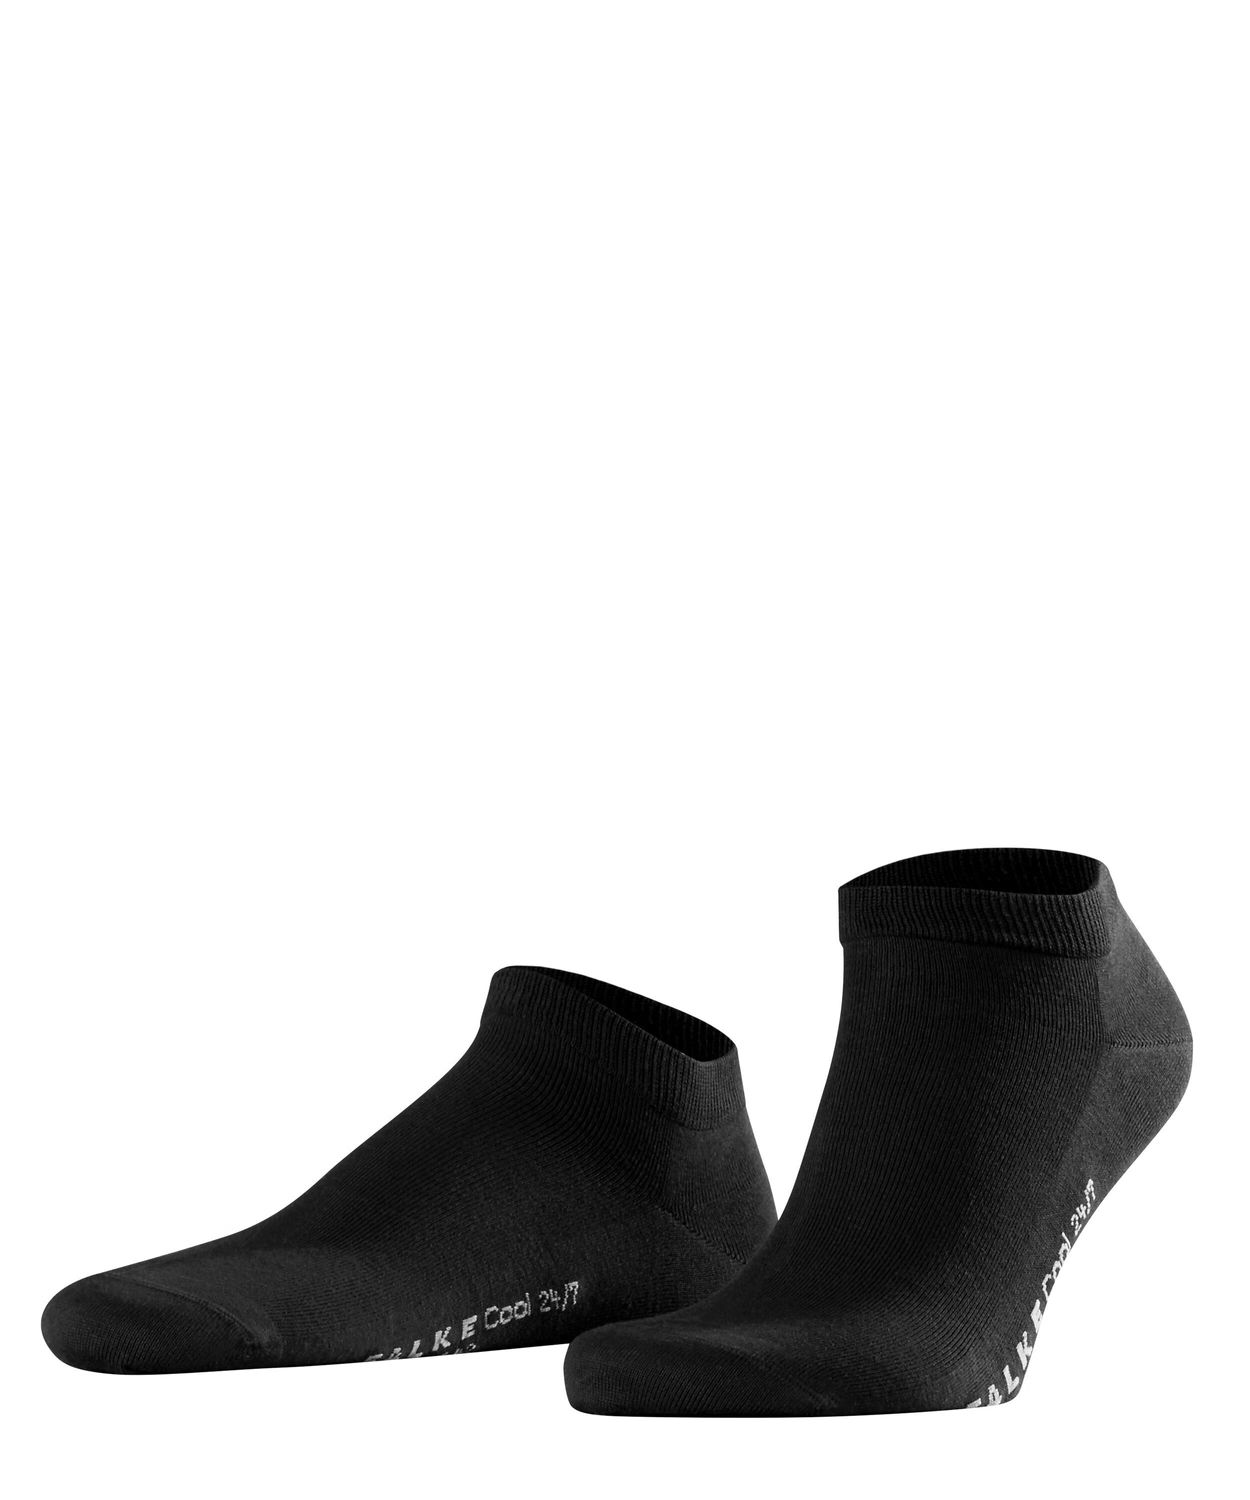 Falke Herren Sneaker Socken COOL 24/7 Hersteller: Falke Bestellnummer:4031309471495